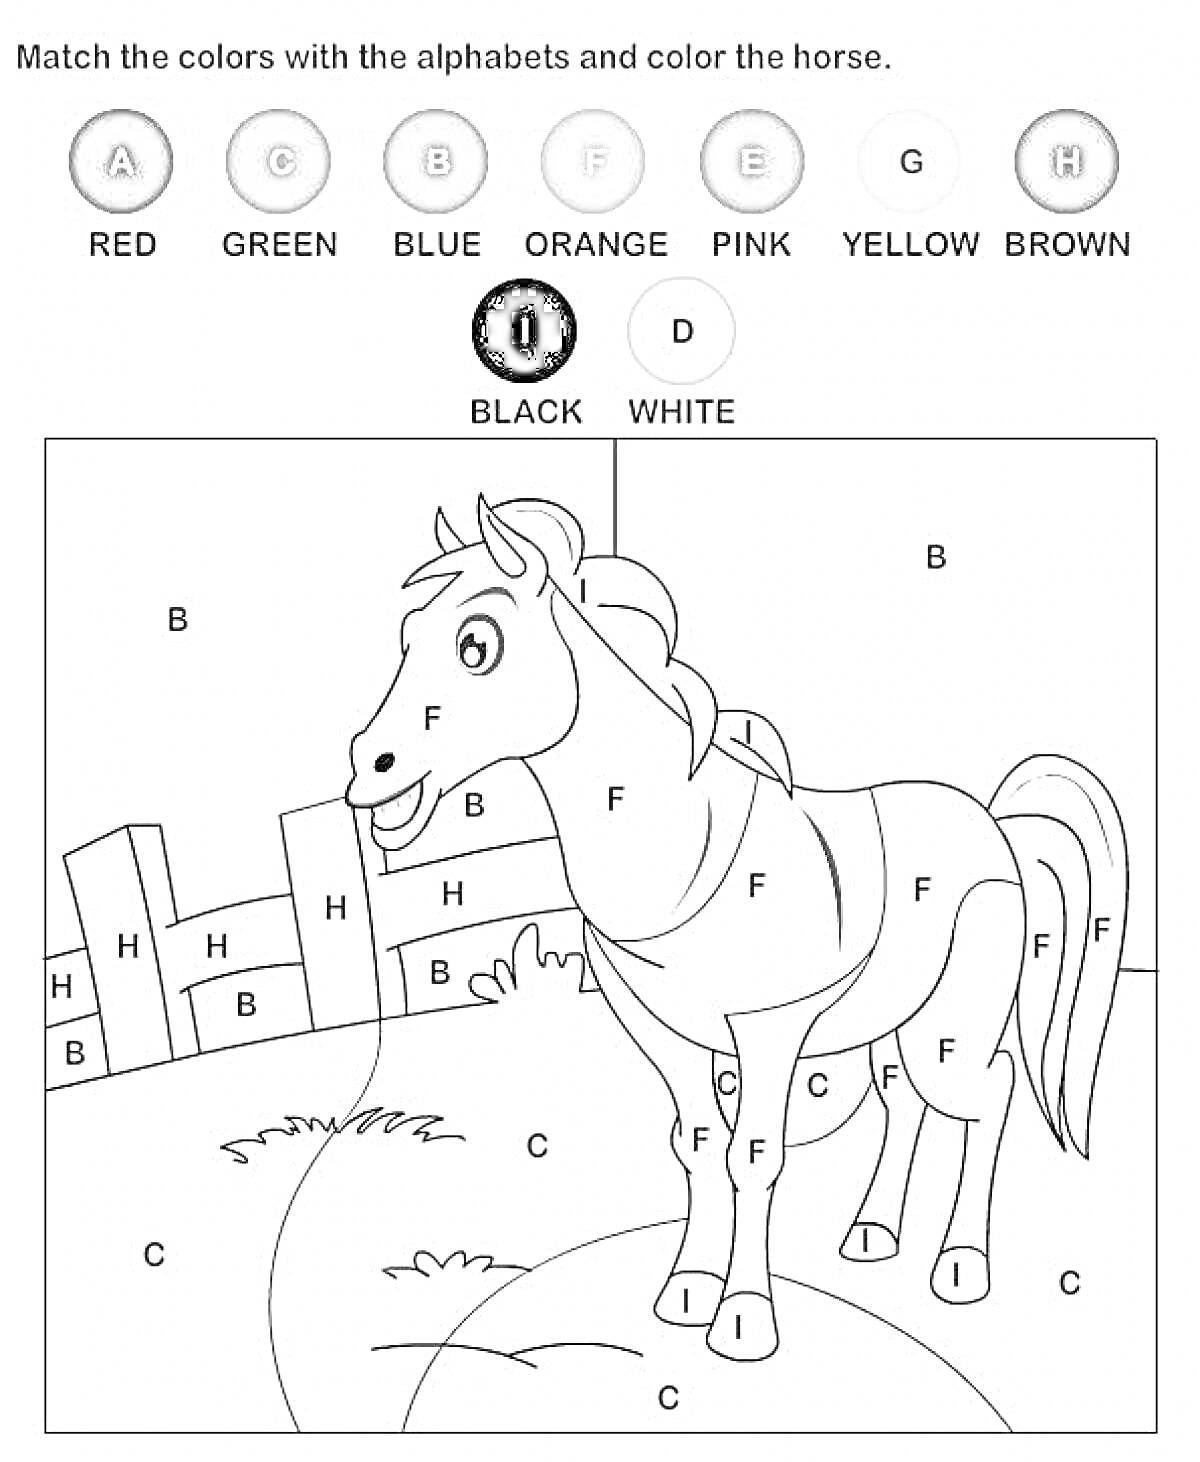 Лошадь на поле с забором, буквы обозначают цвета